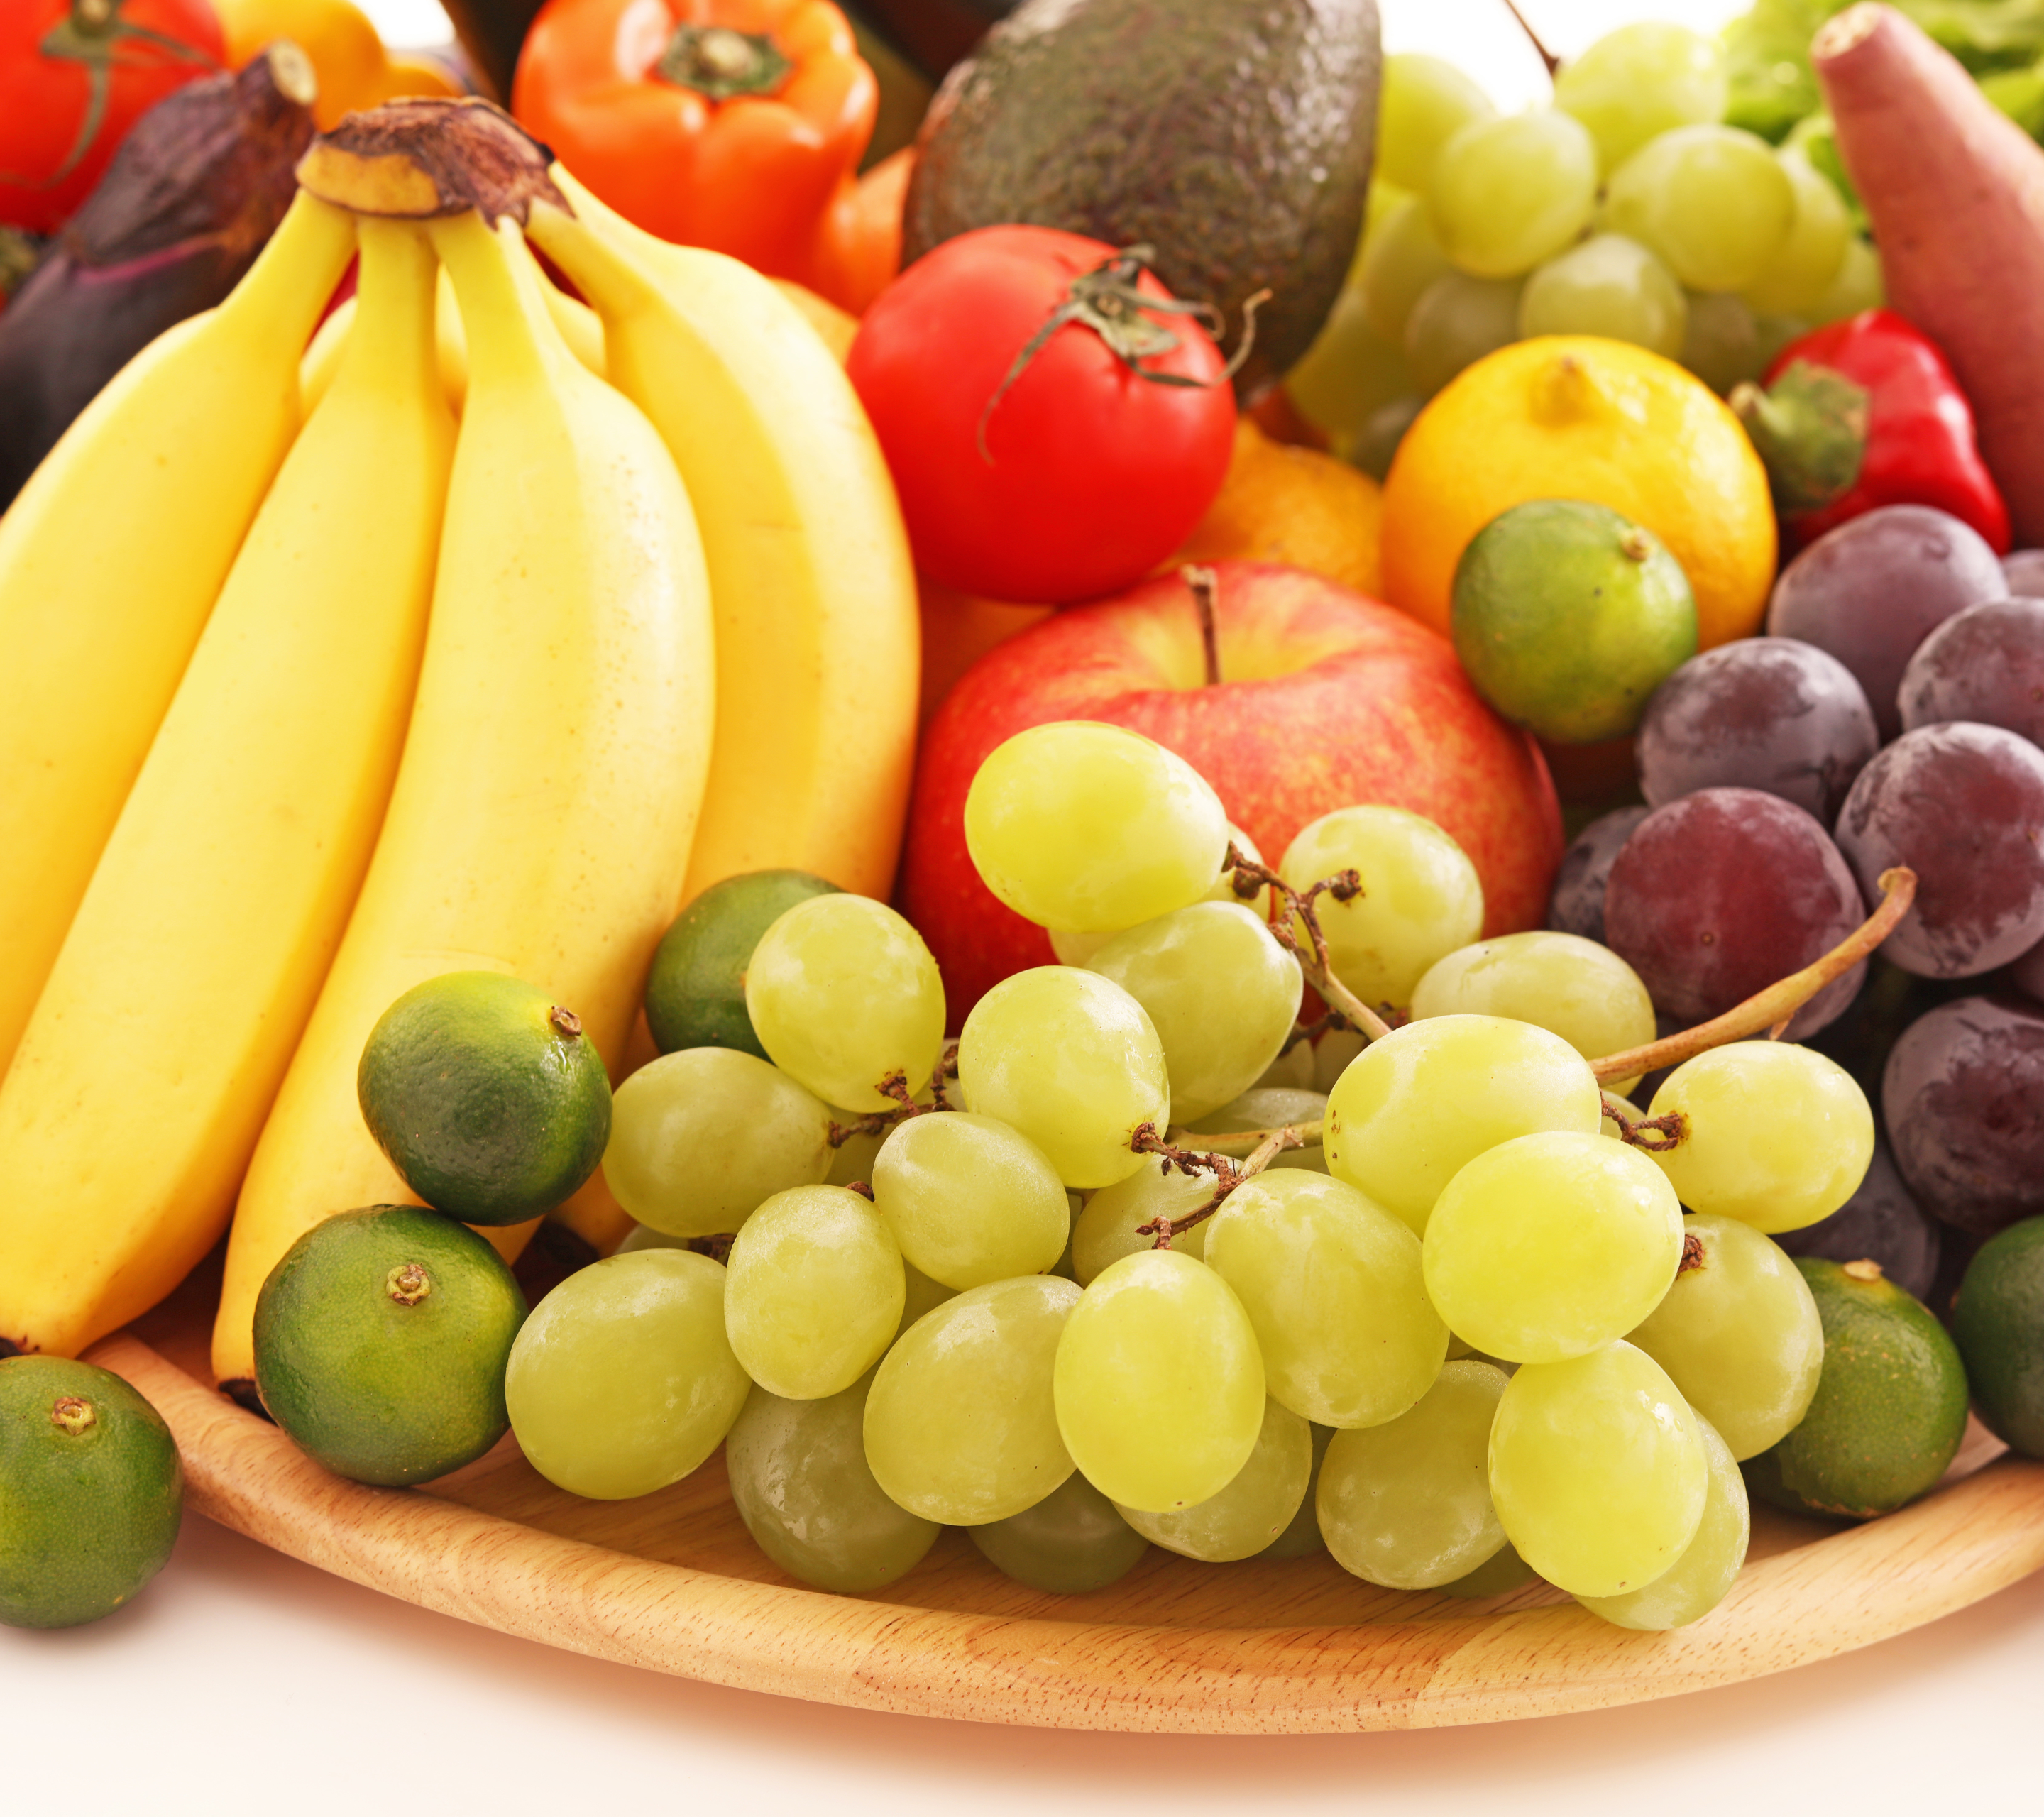 Download mobile wallpaper Fruits, Food, Apple, Grapes, Fruit, Banana, Vegetable, Fruits & Vegetables for free.